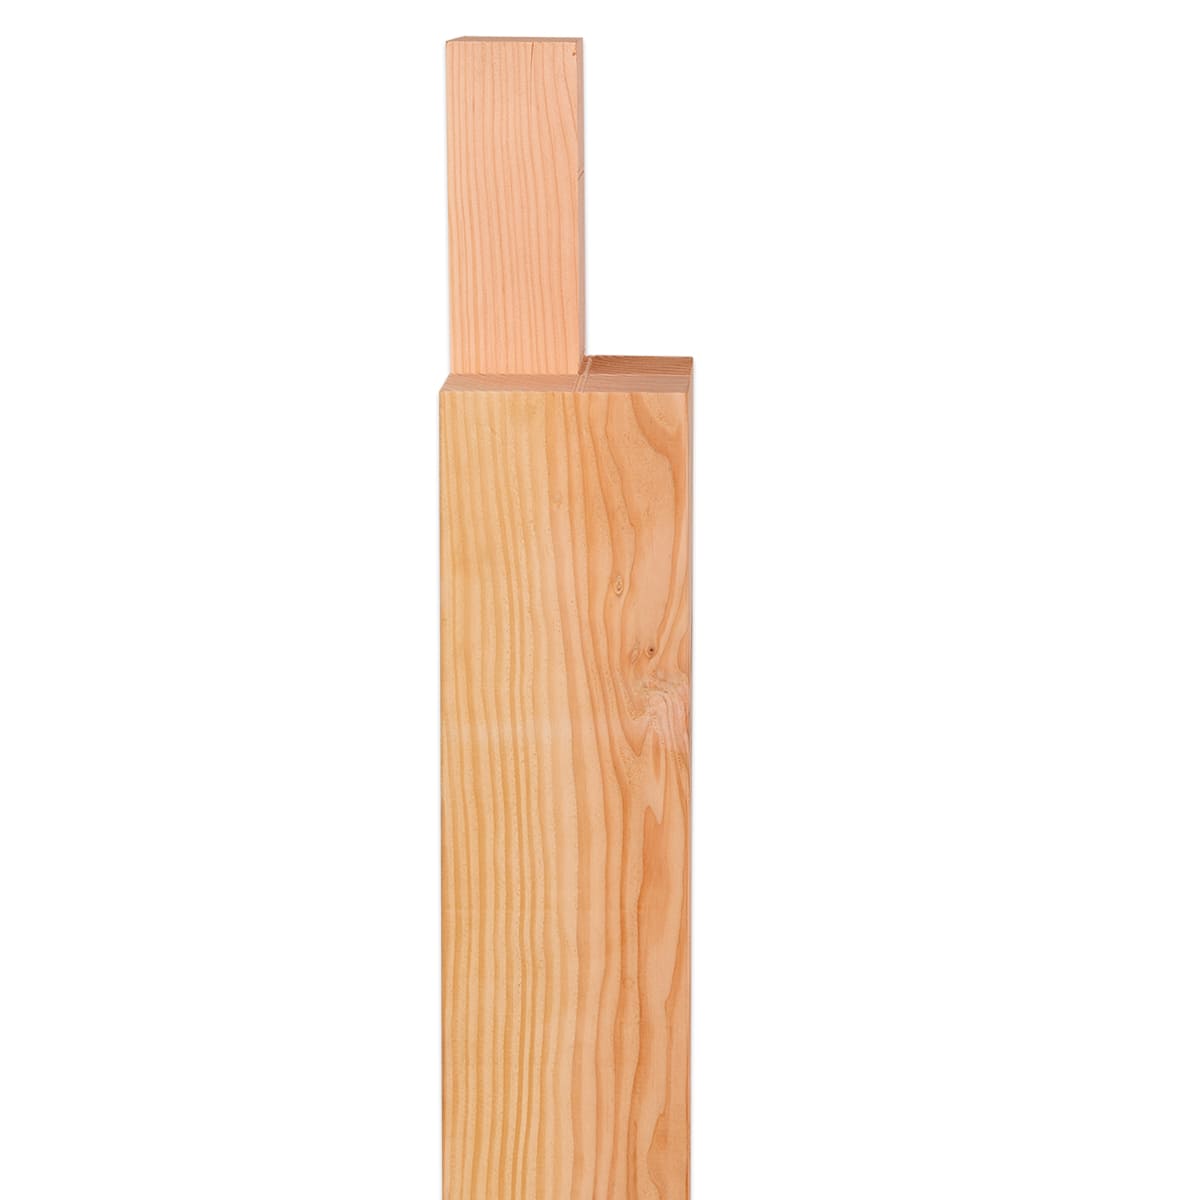 Douglas houten staander hoek verbinding